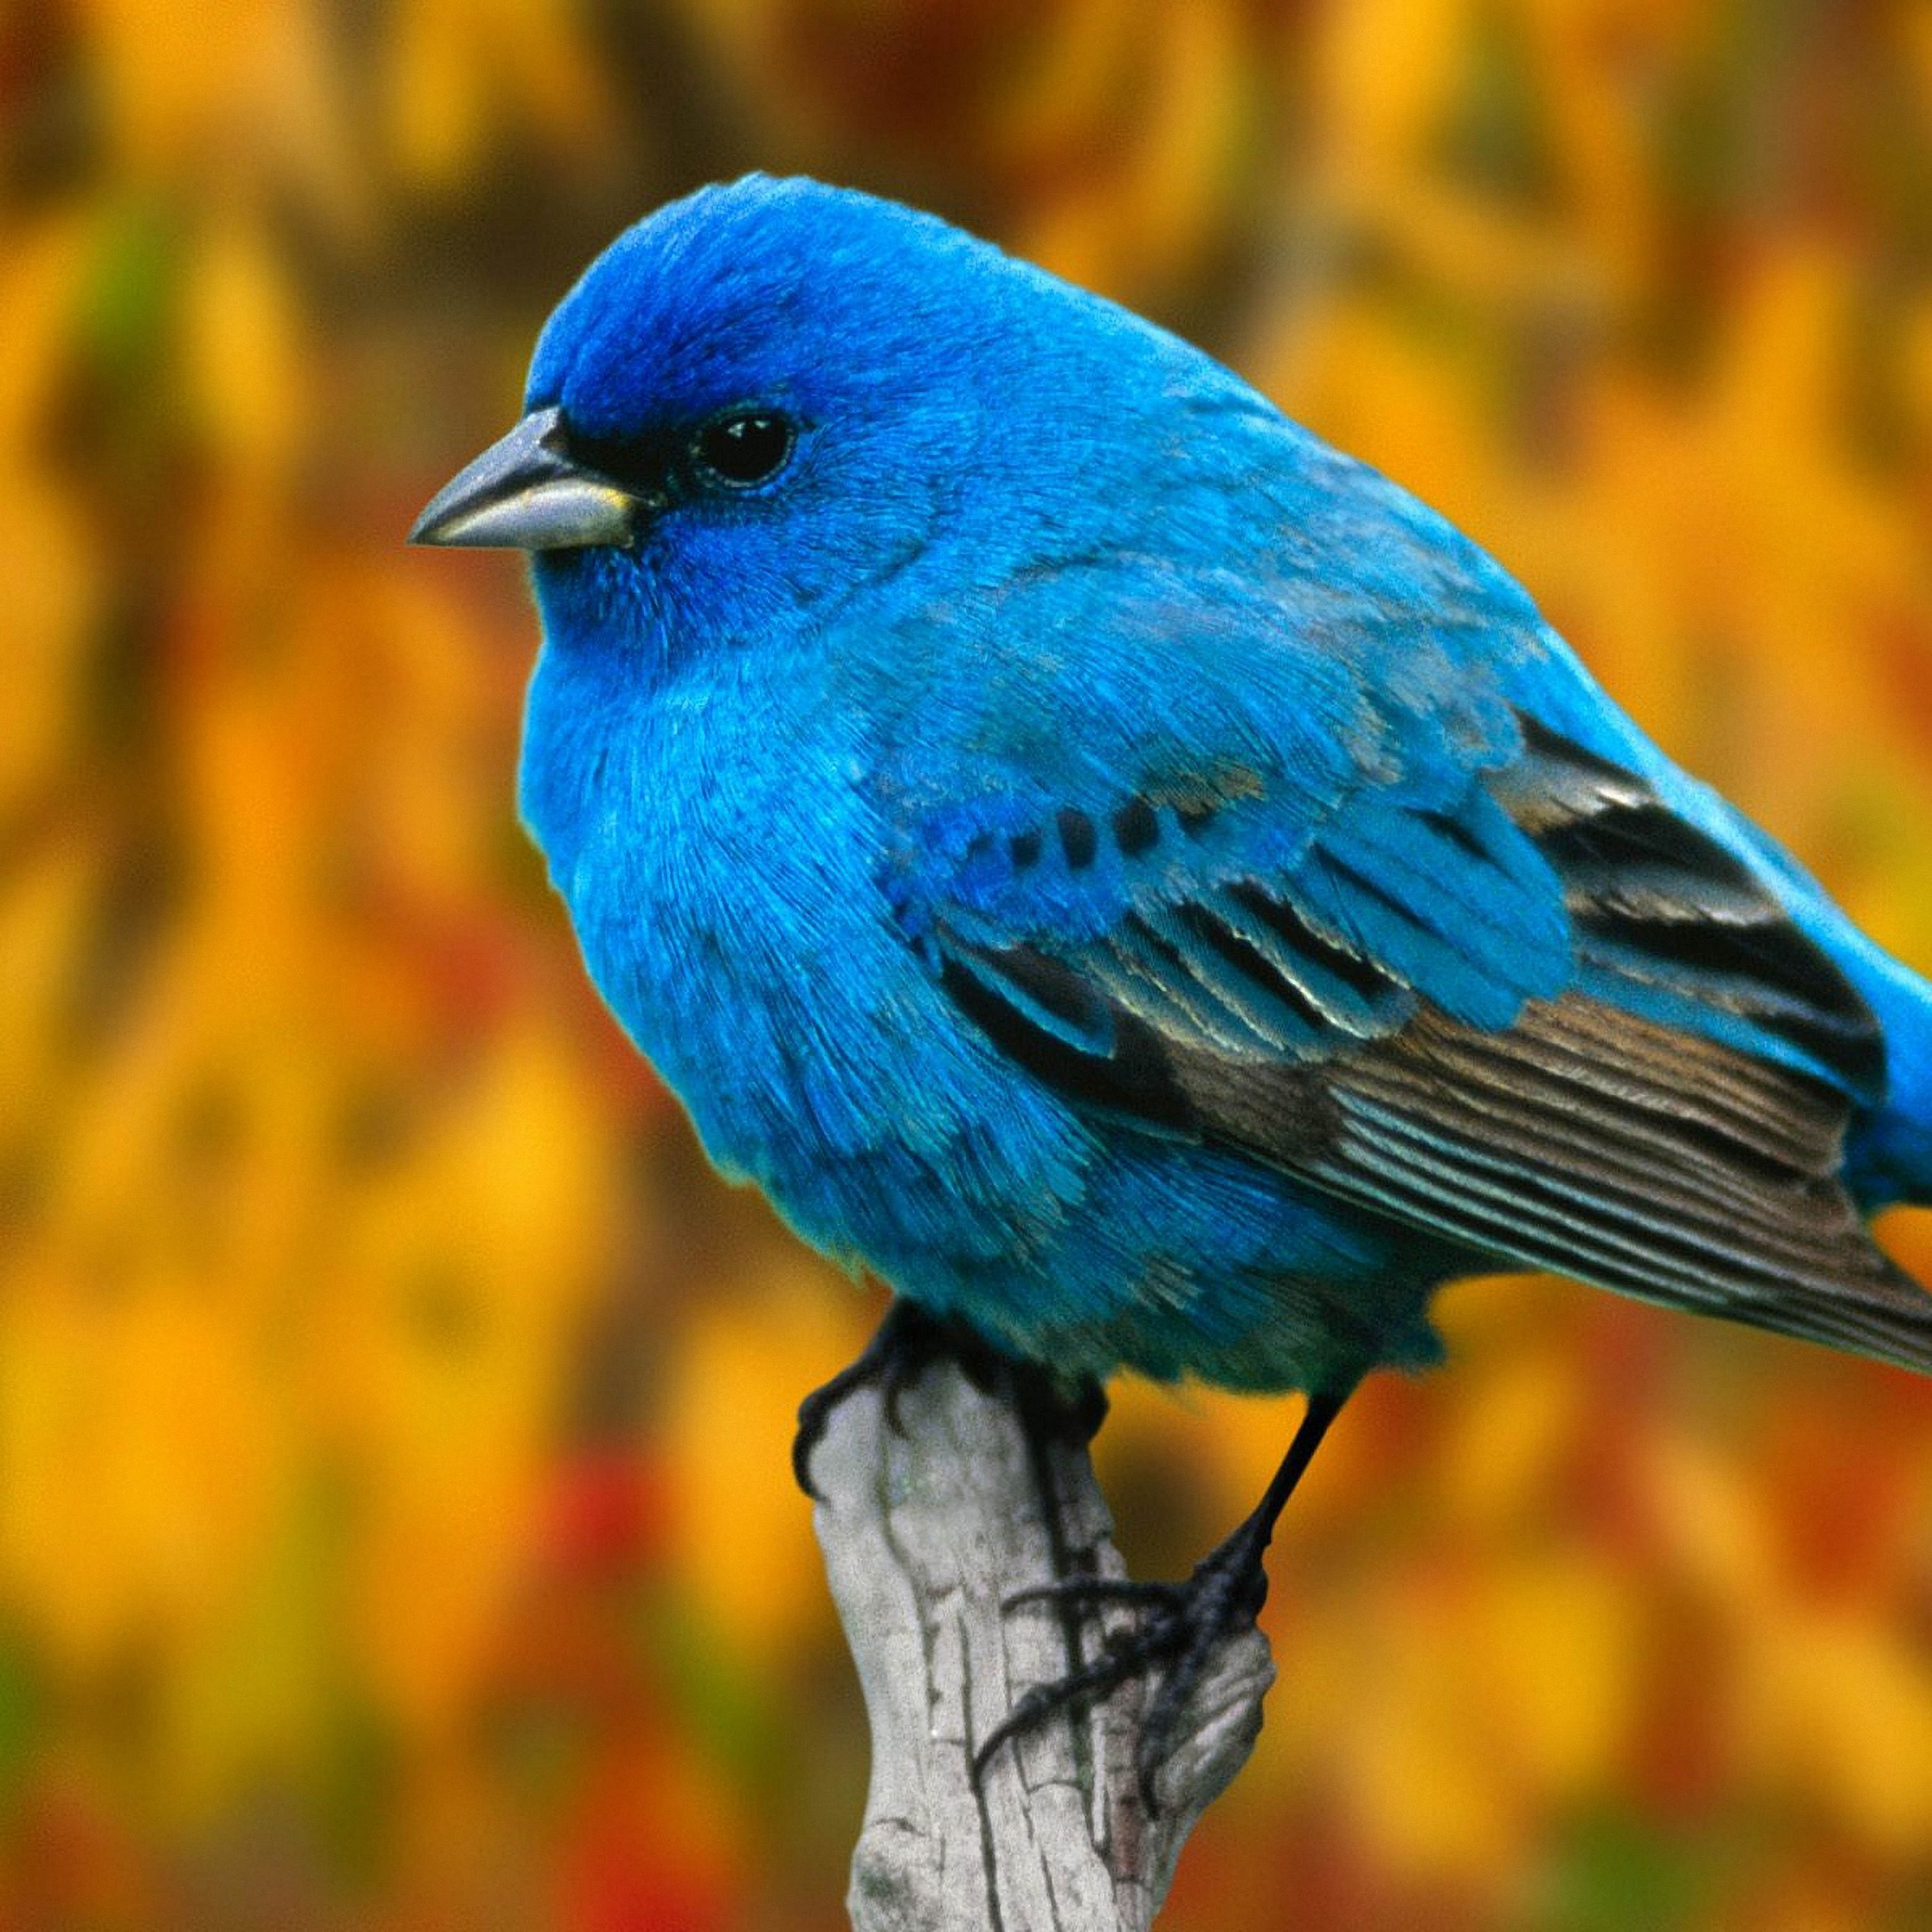 Синяя птичка